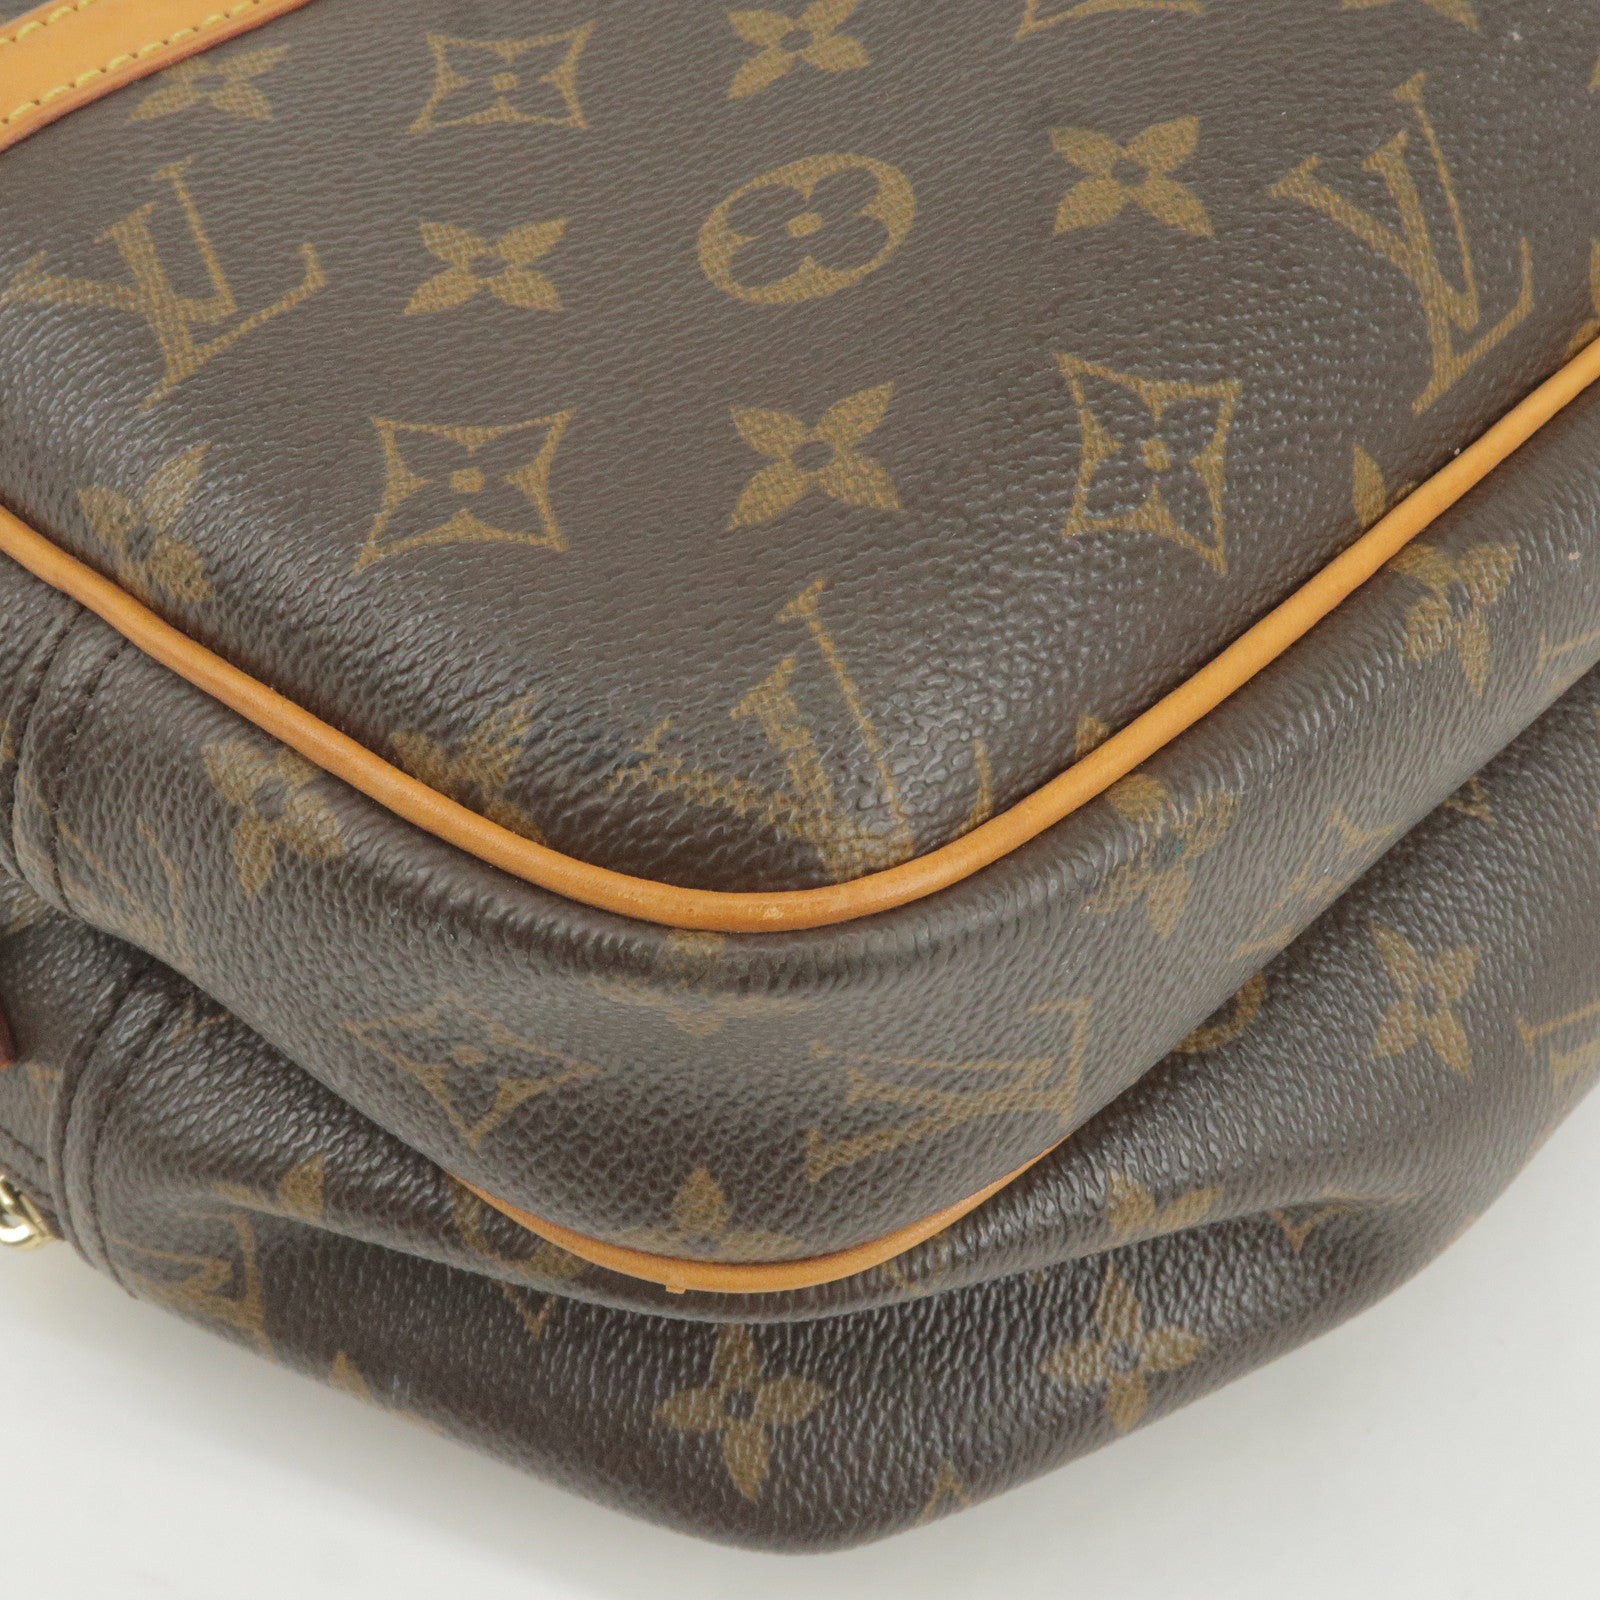 Louis Vuitton Reporter Pm M45254 Monogram Sp1025 Shoulder Bag